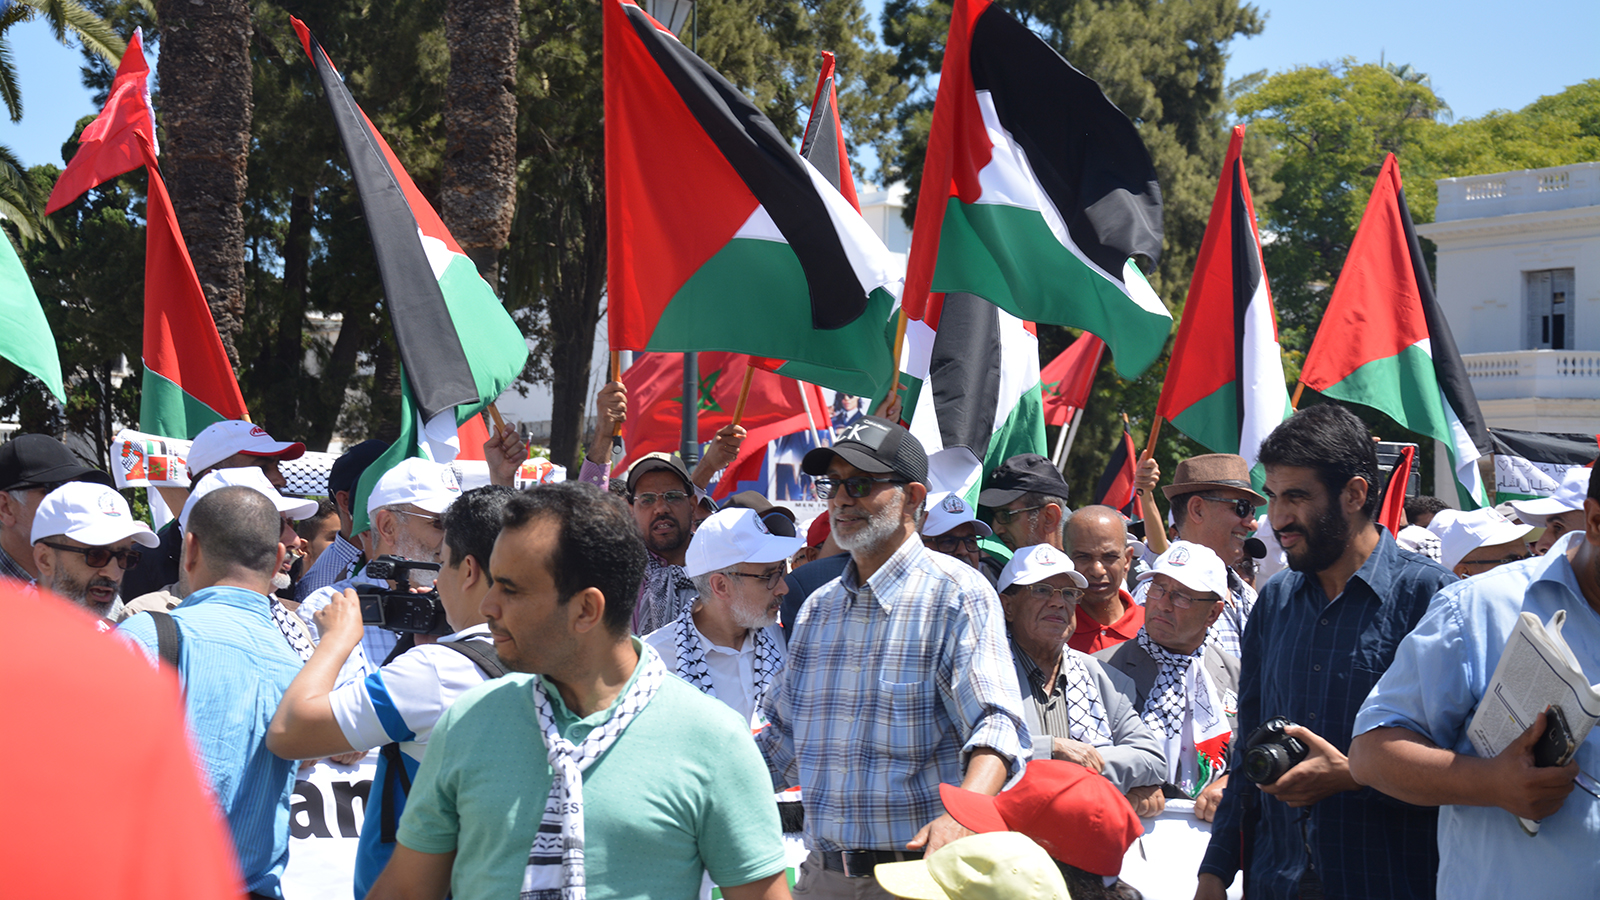 ‪مغاربة اعتبروا مؤتمر المنامة رشوة مفضوحة ومحاولة لبيع فلسطين‬  (الجزيرة)